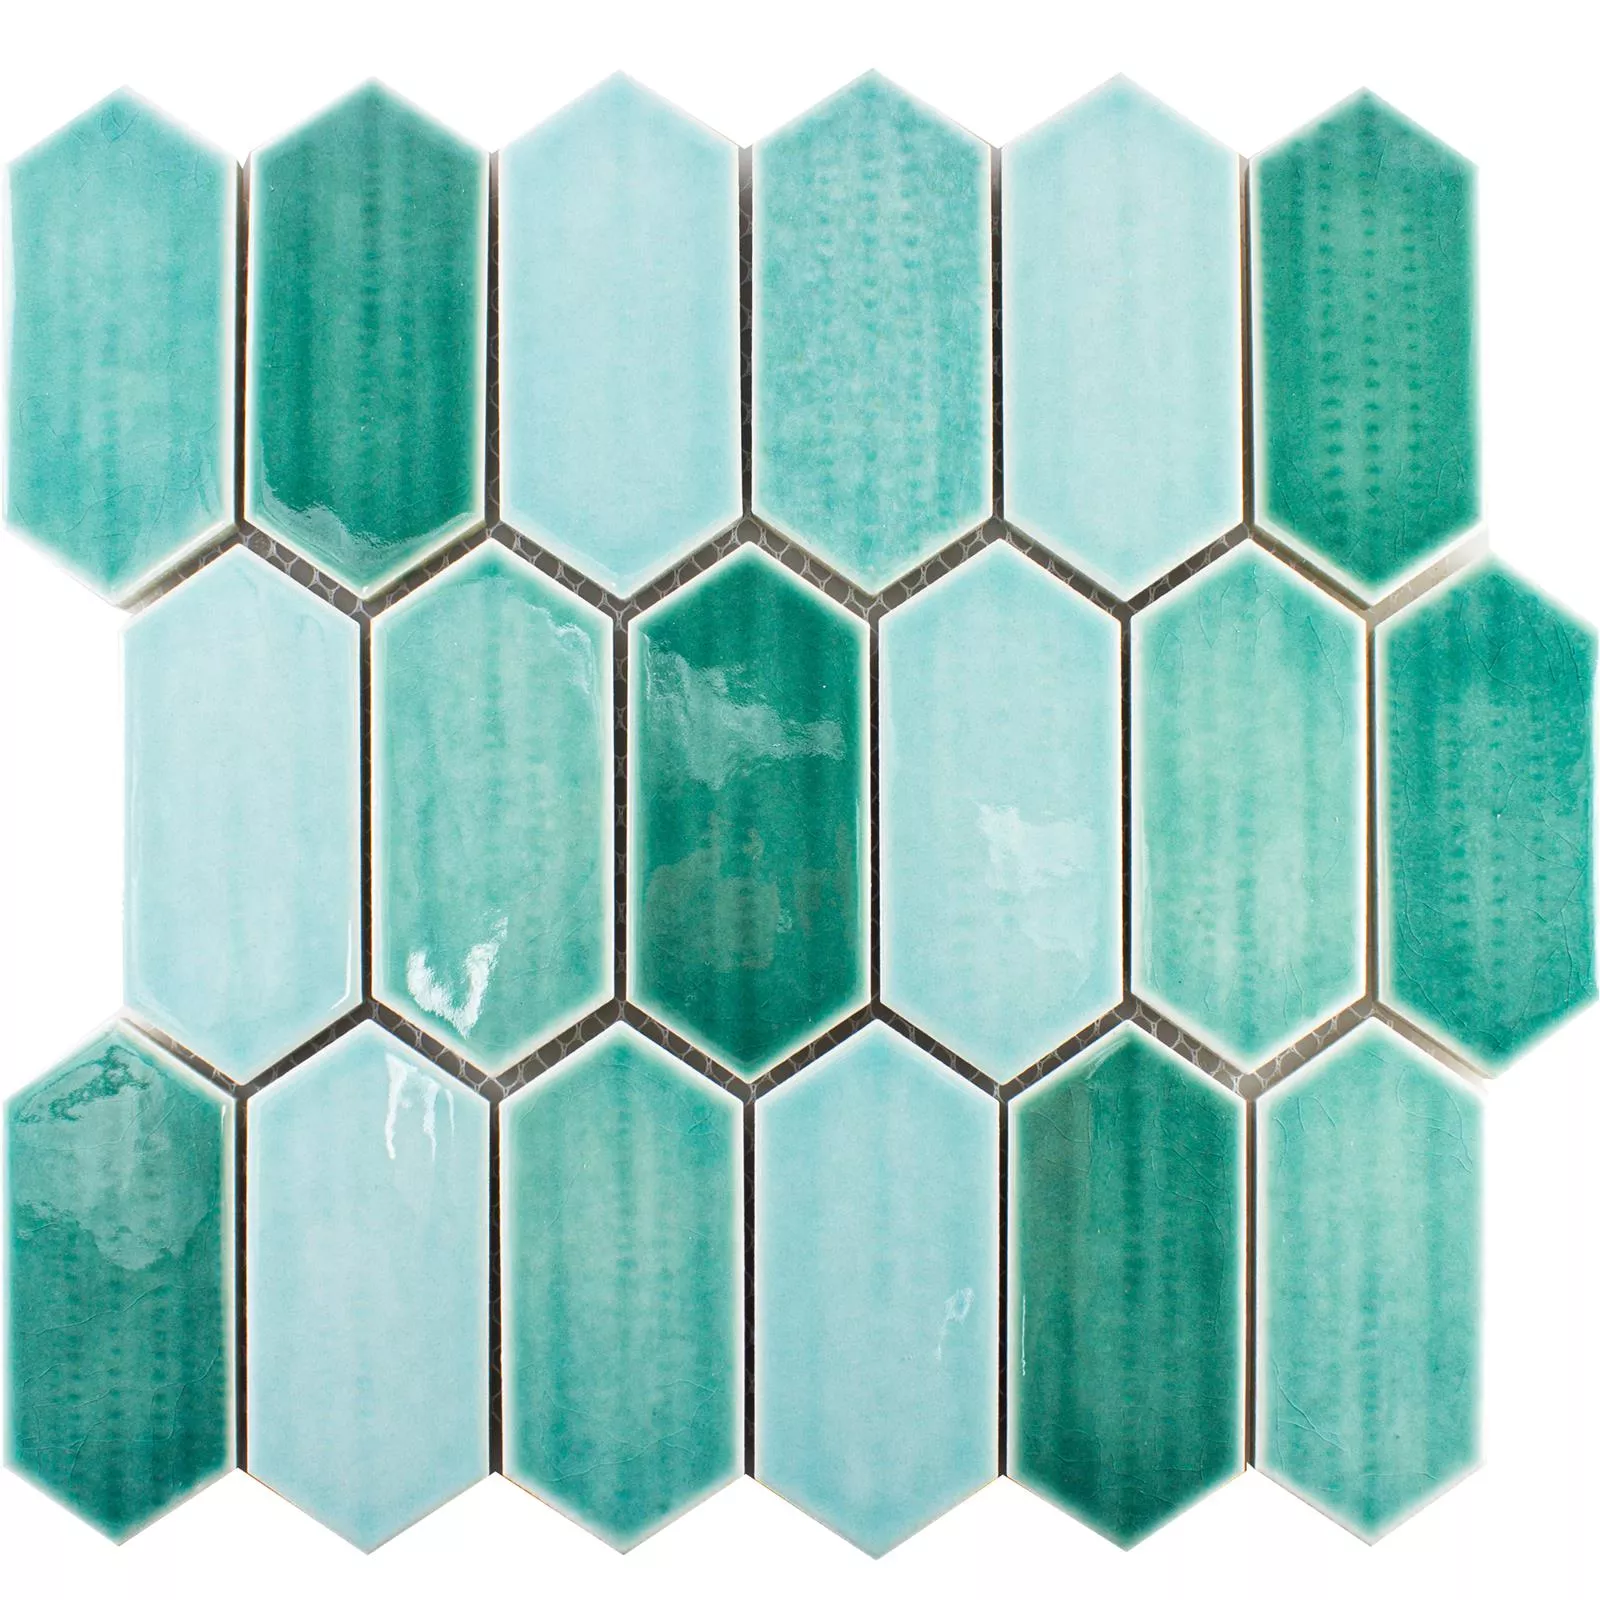 Keramik Mosaikfliesen McCook Hexagon Lang Türkis Grün